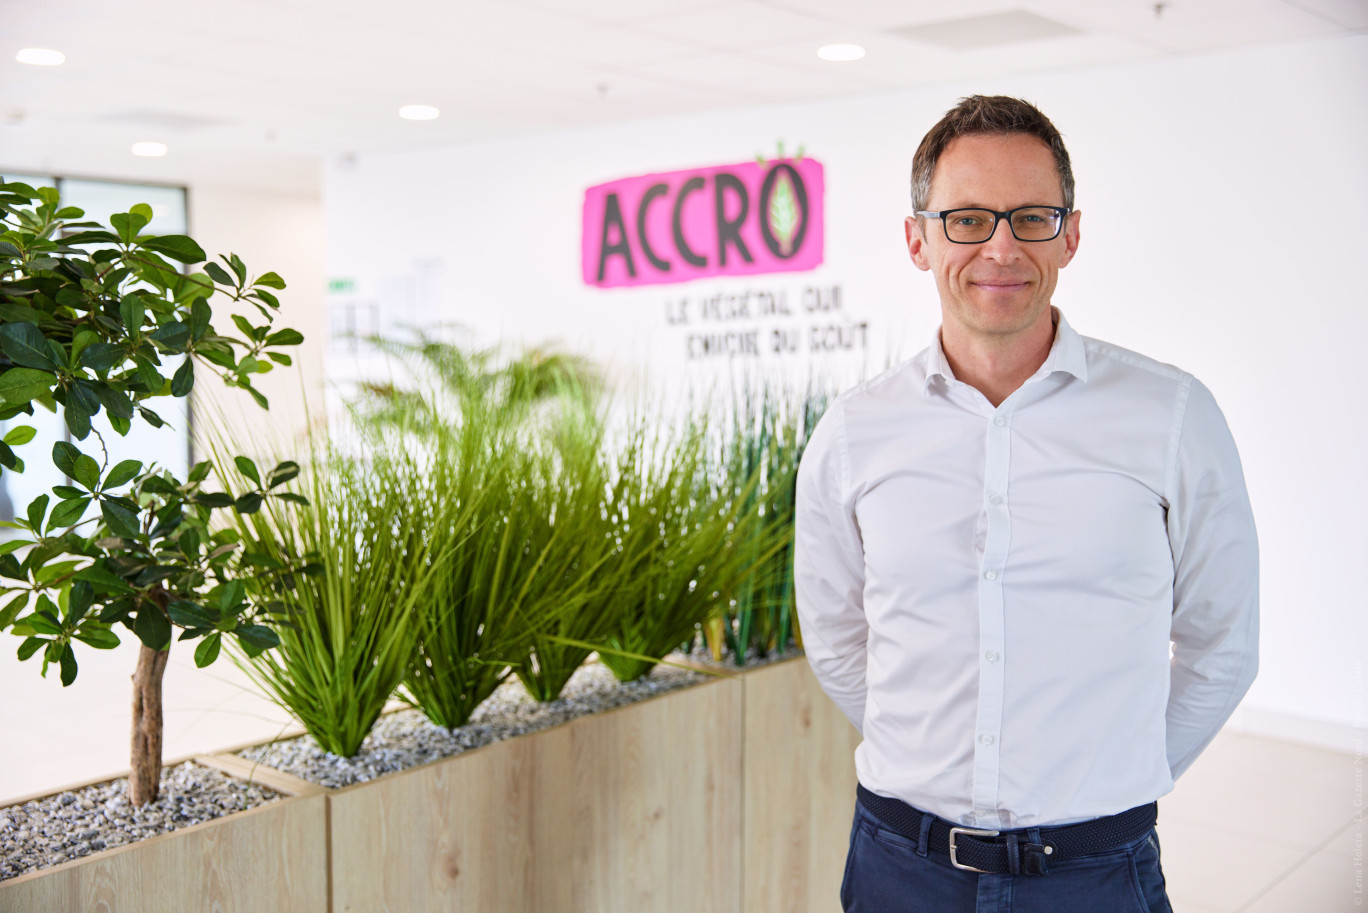 Le toulousain Renaud Saïsset est le directeur général de l'usine ACCRO depuis 2022. ©Lena Heleta